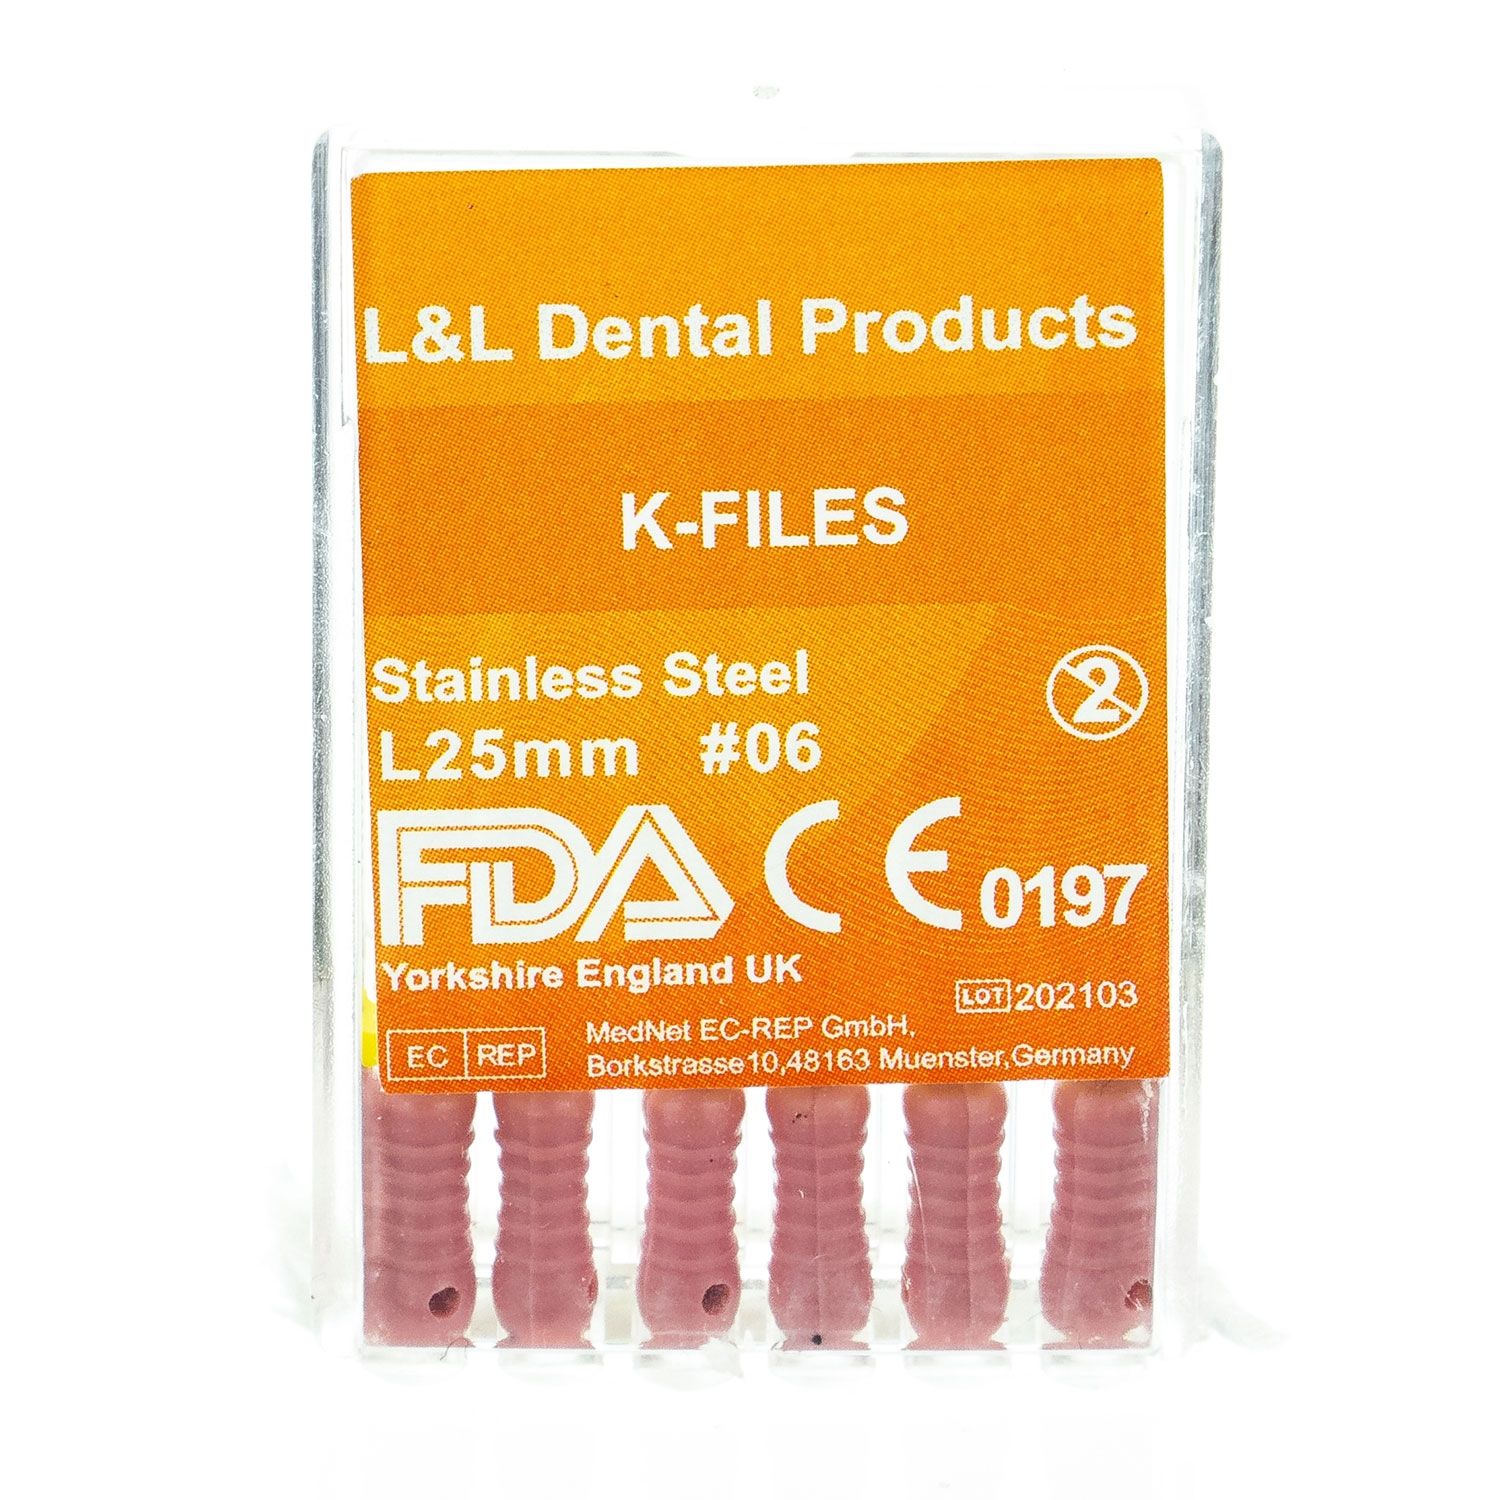 参比制剂,进口原料药,医药原料药 K Files: 31mm - ISO 06 (6)